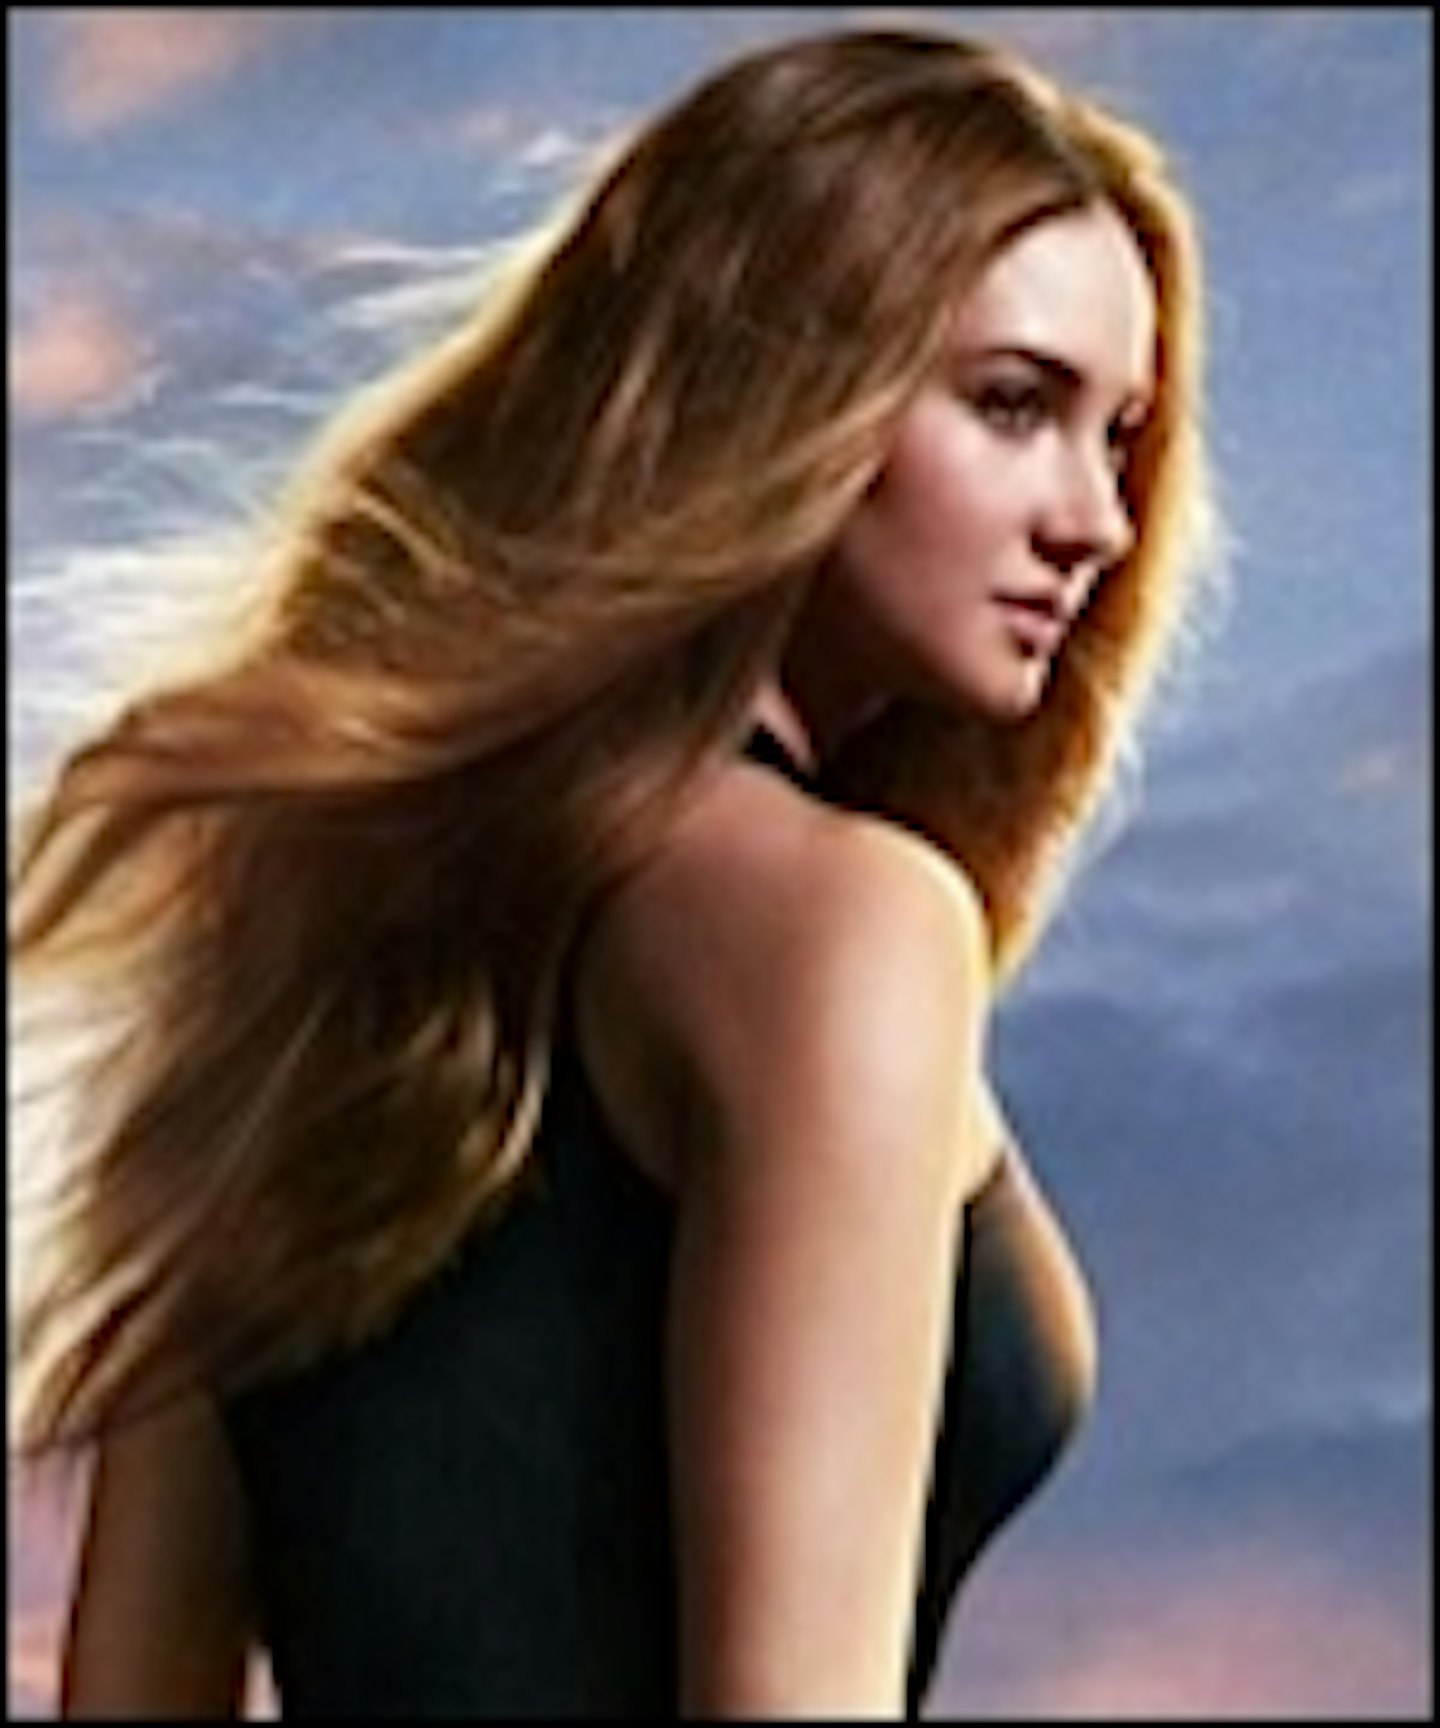 New Divergent Poster Arrives